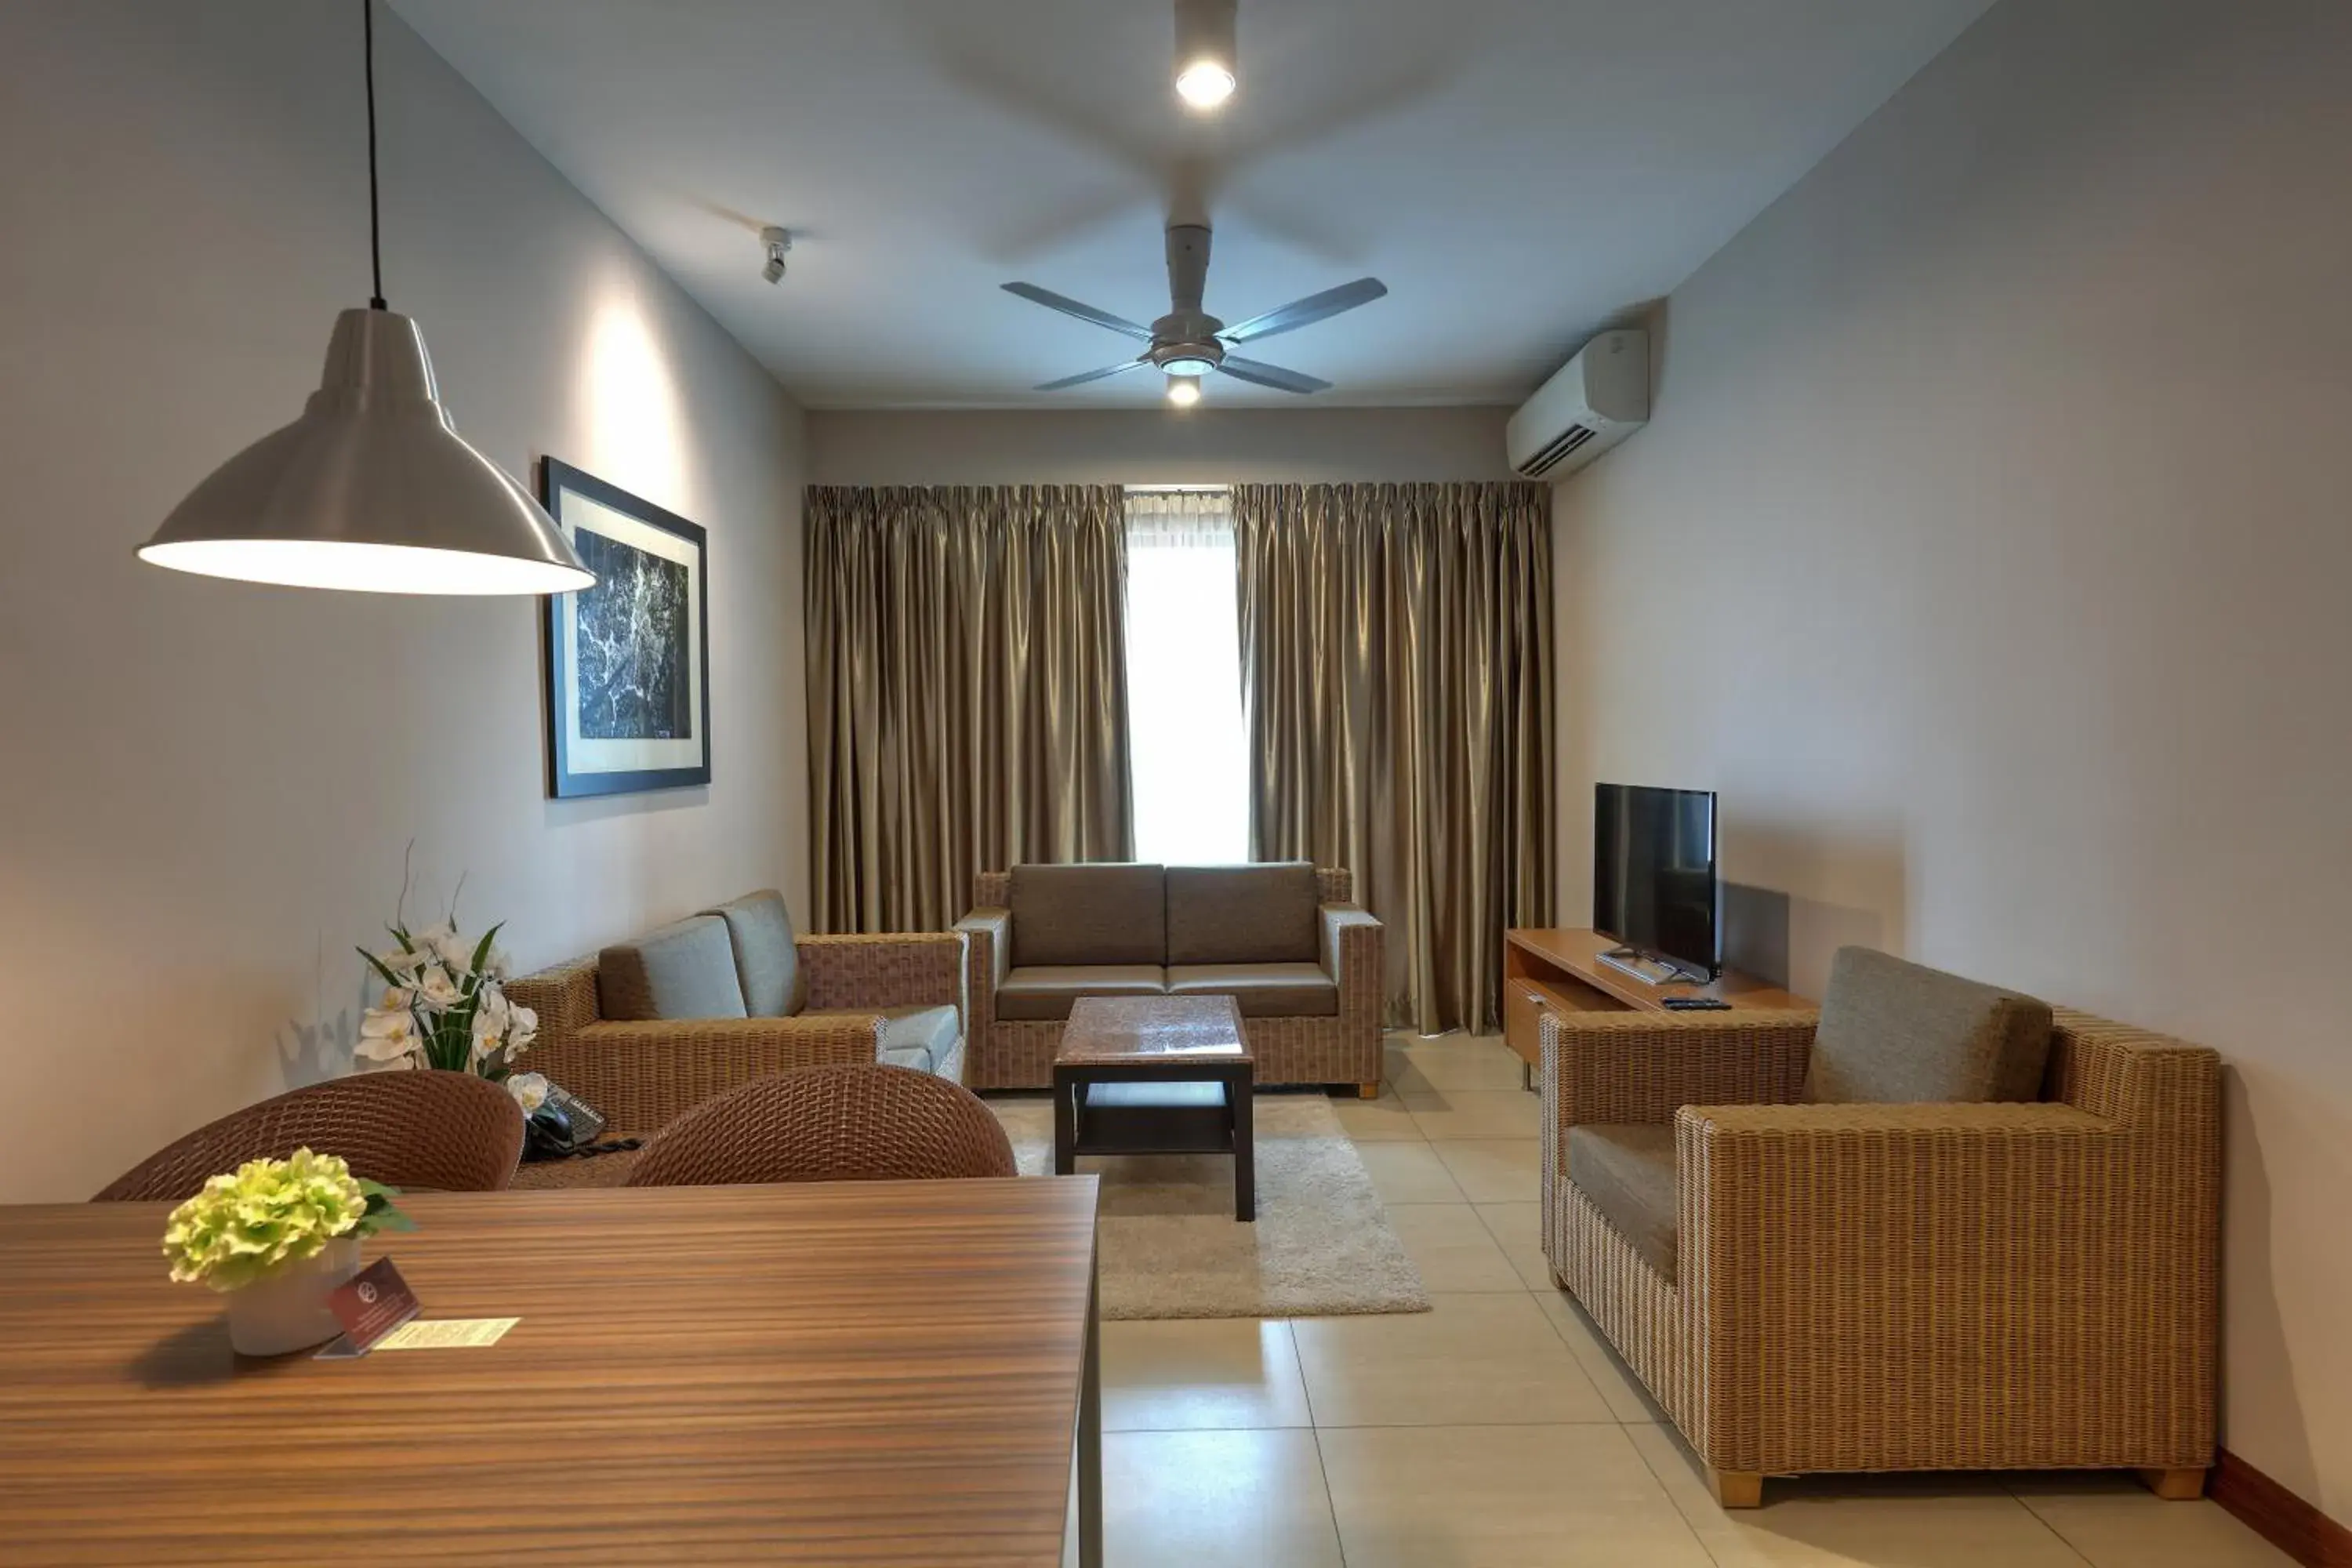 Living room in Acappella Suite Hotel, Shah Alam